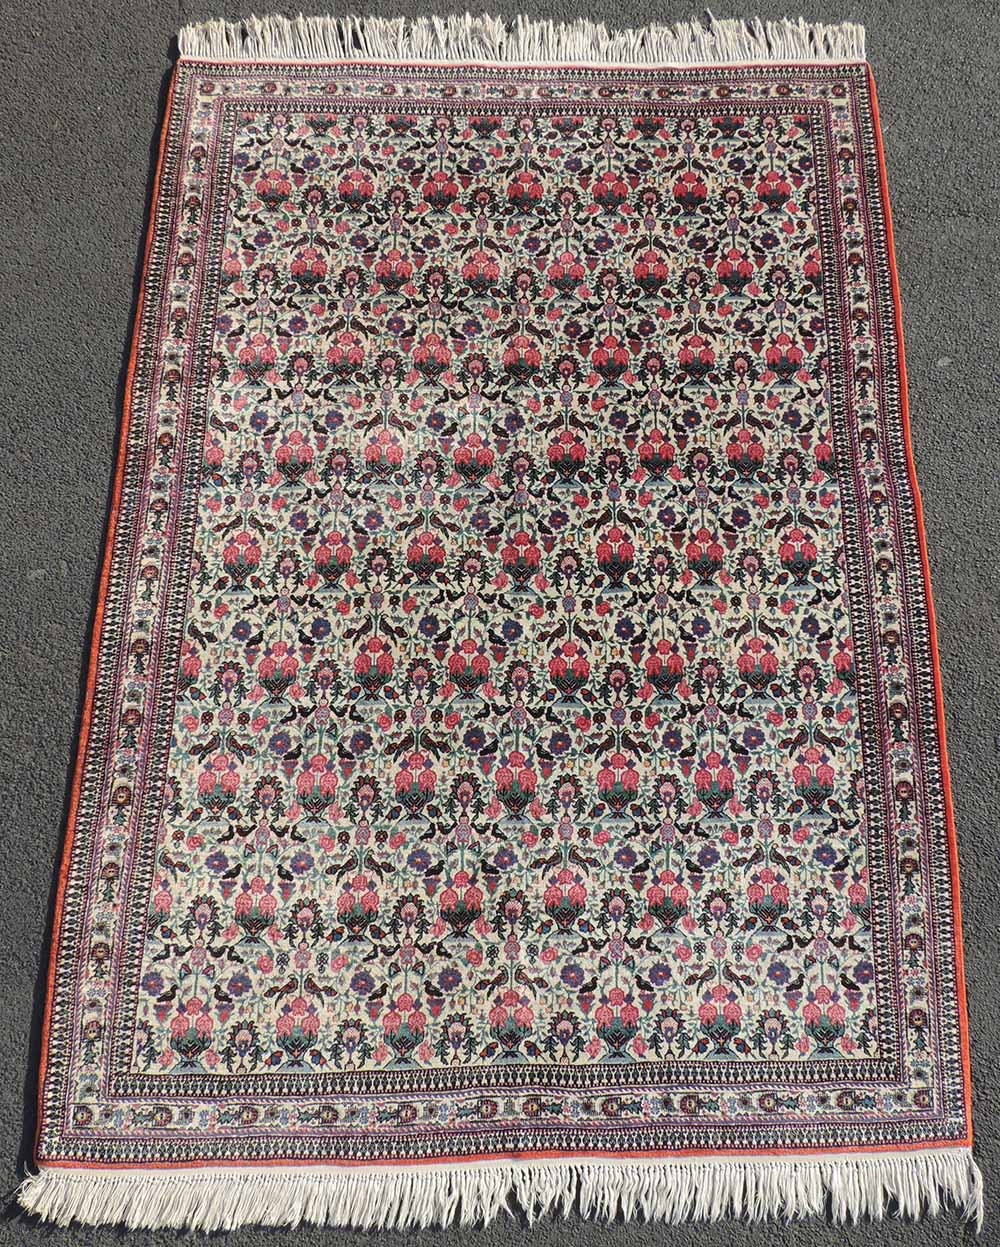 Teheran Manufakturteppich. Zili - Sultan - Muster. Iran. Sehr fein.212 cm x 146 cm. Handgeknüpft.